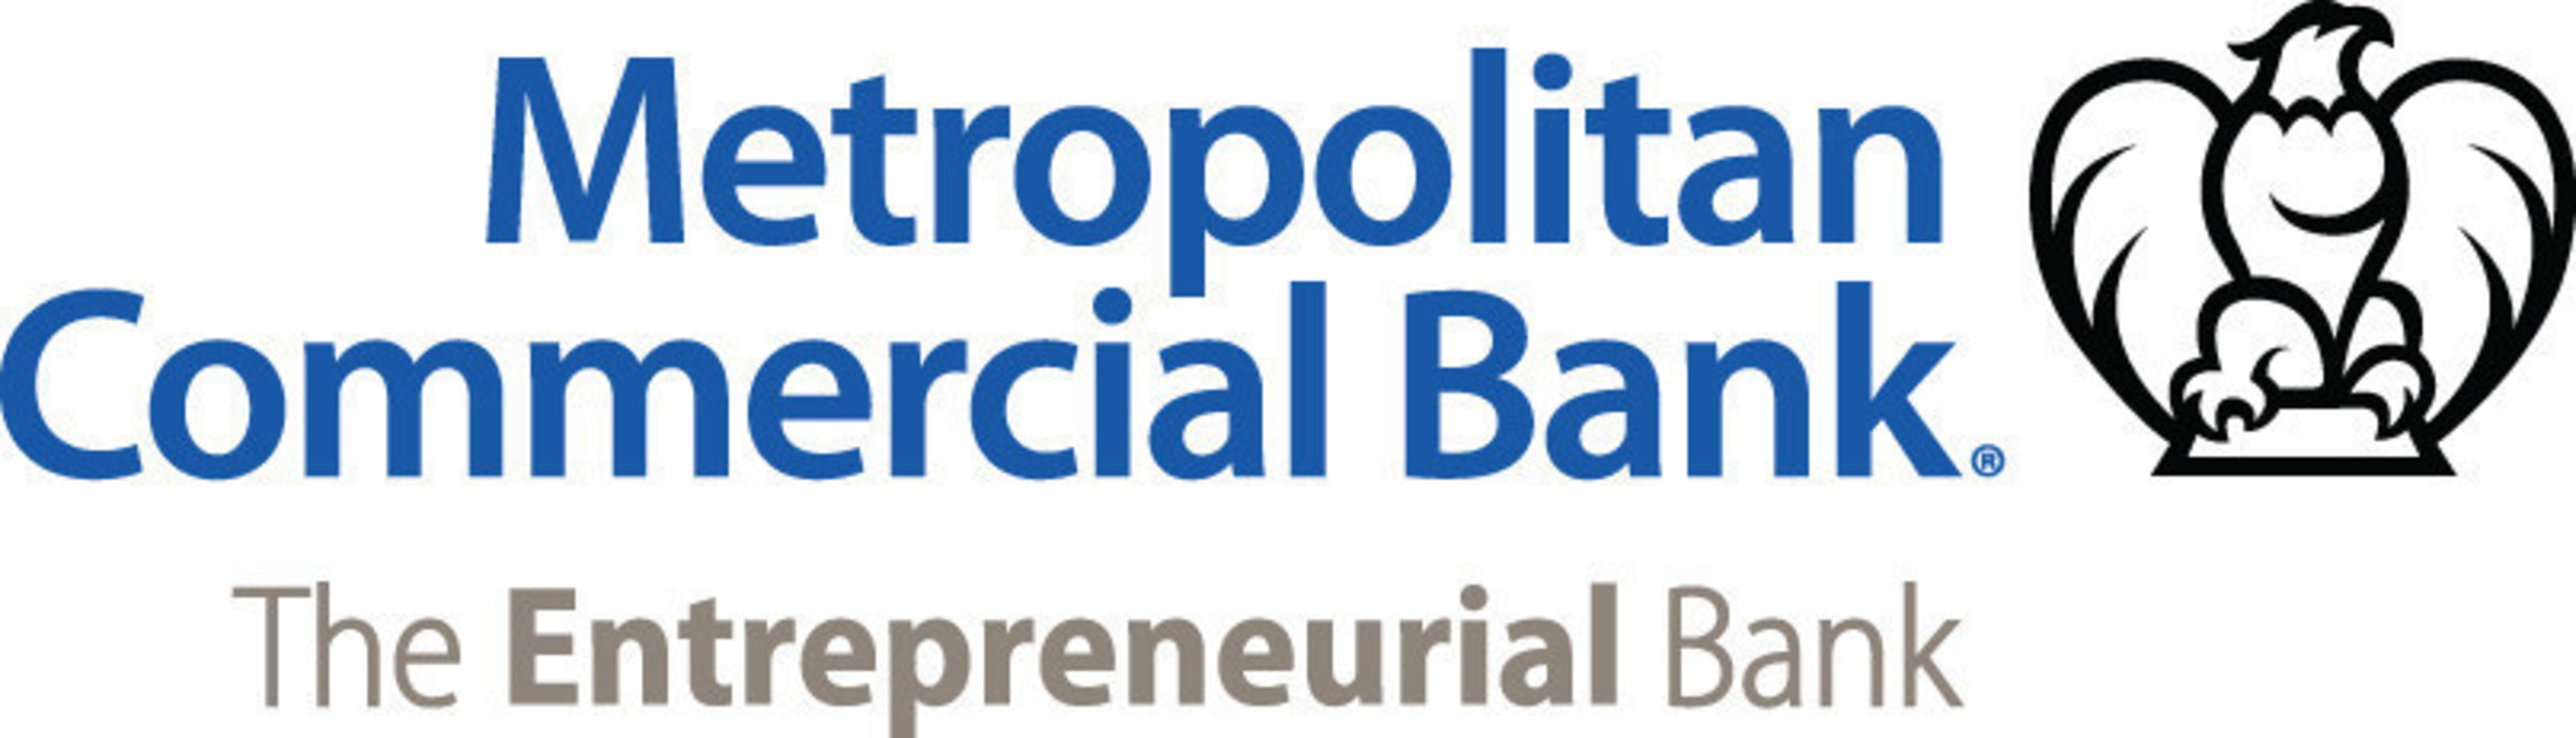 Metropolitan_Commercial_Bank_Logo